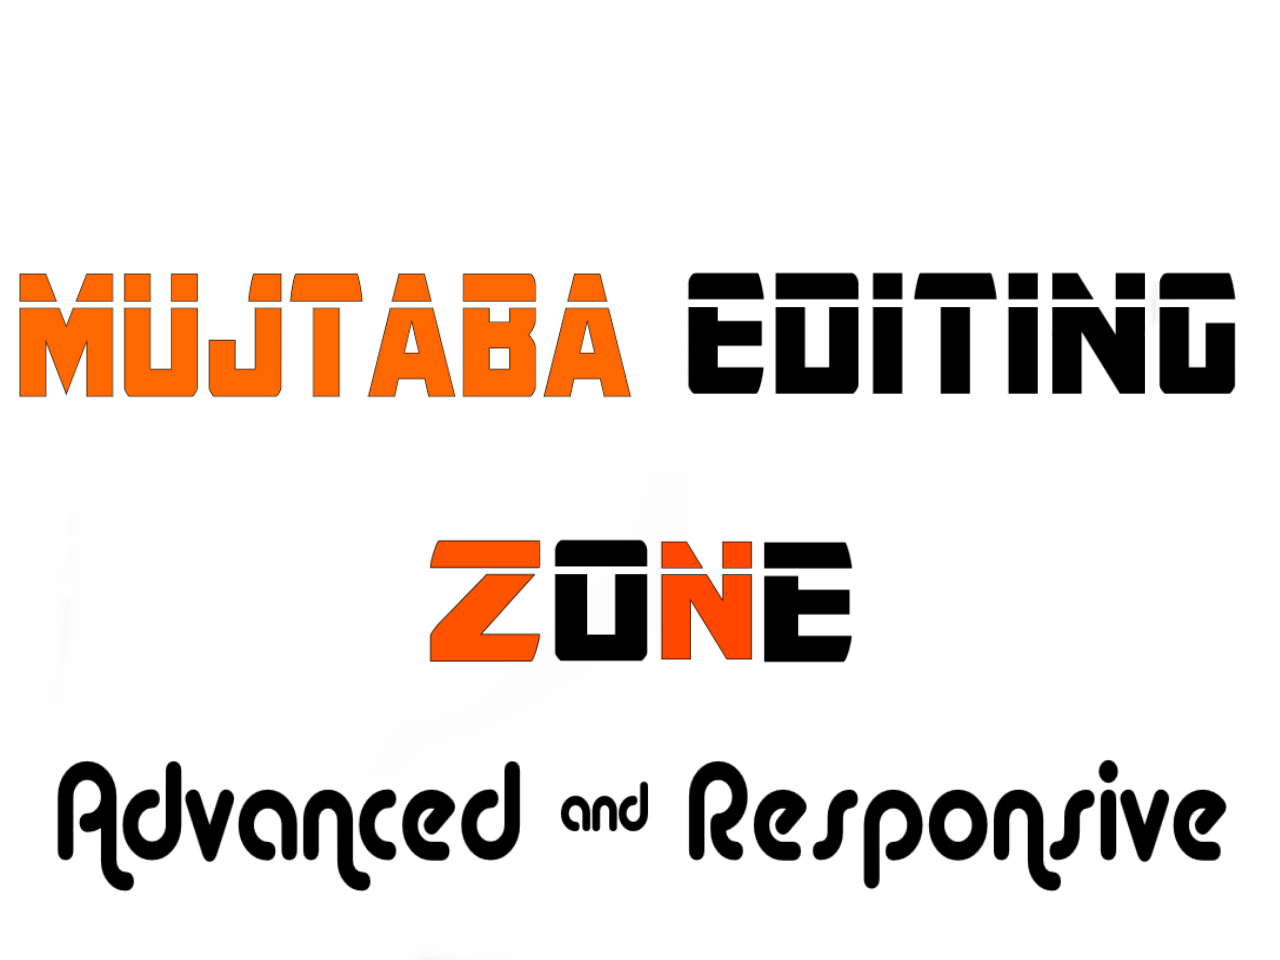 Mujtaba Editing Zone